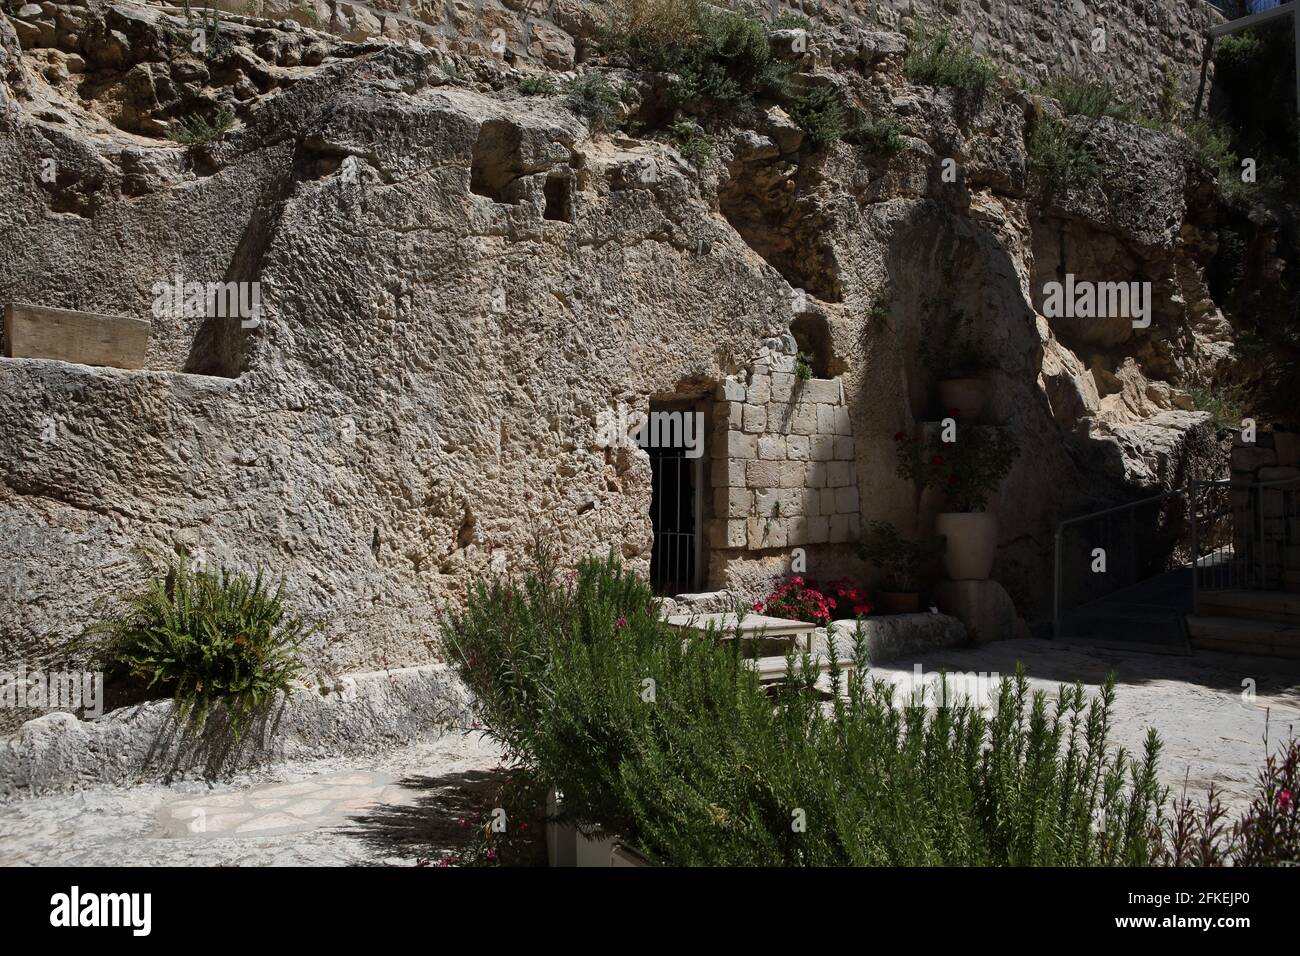 Das Gartengrab, eine alte jüdische Grabhöhle außerhalb der Altstadt von Jerusalem, wo einige Christen glauben, dass Jesus nach der Kreuzigung begraben wurde. Stockfoto